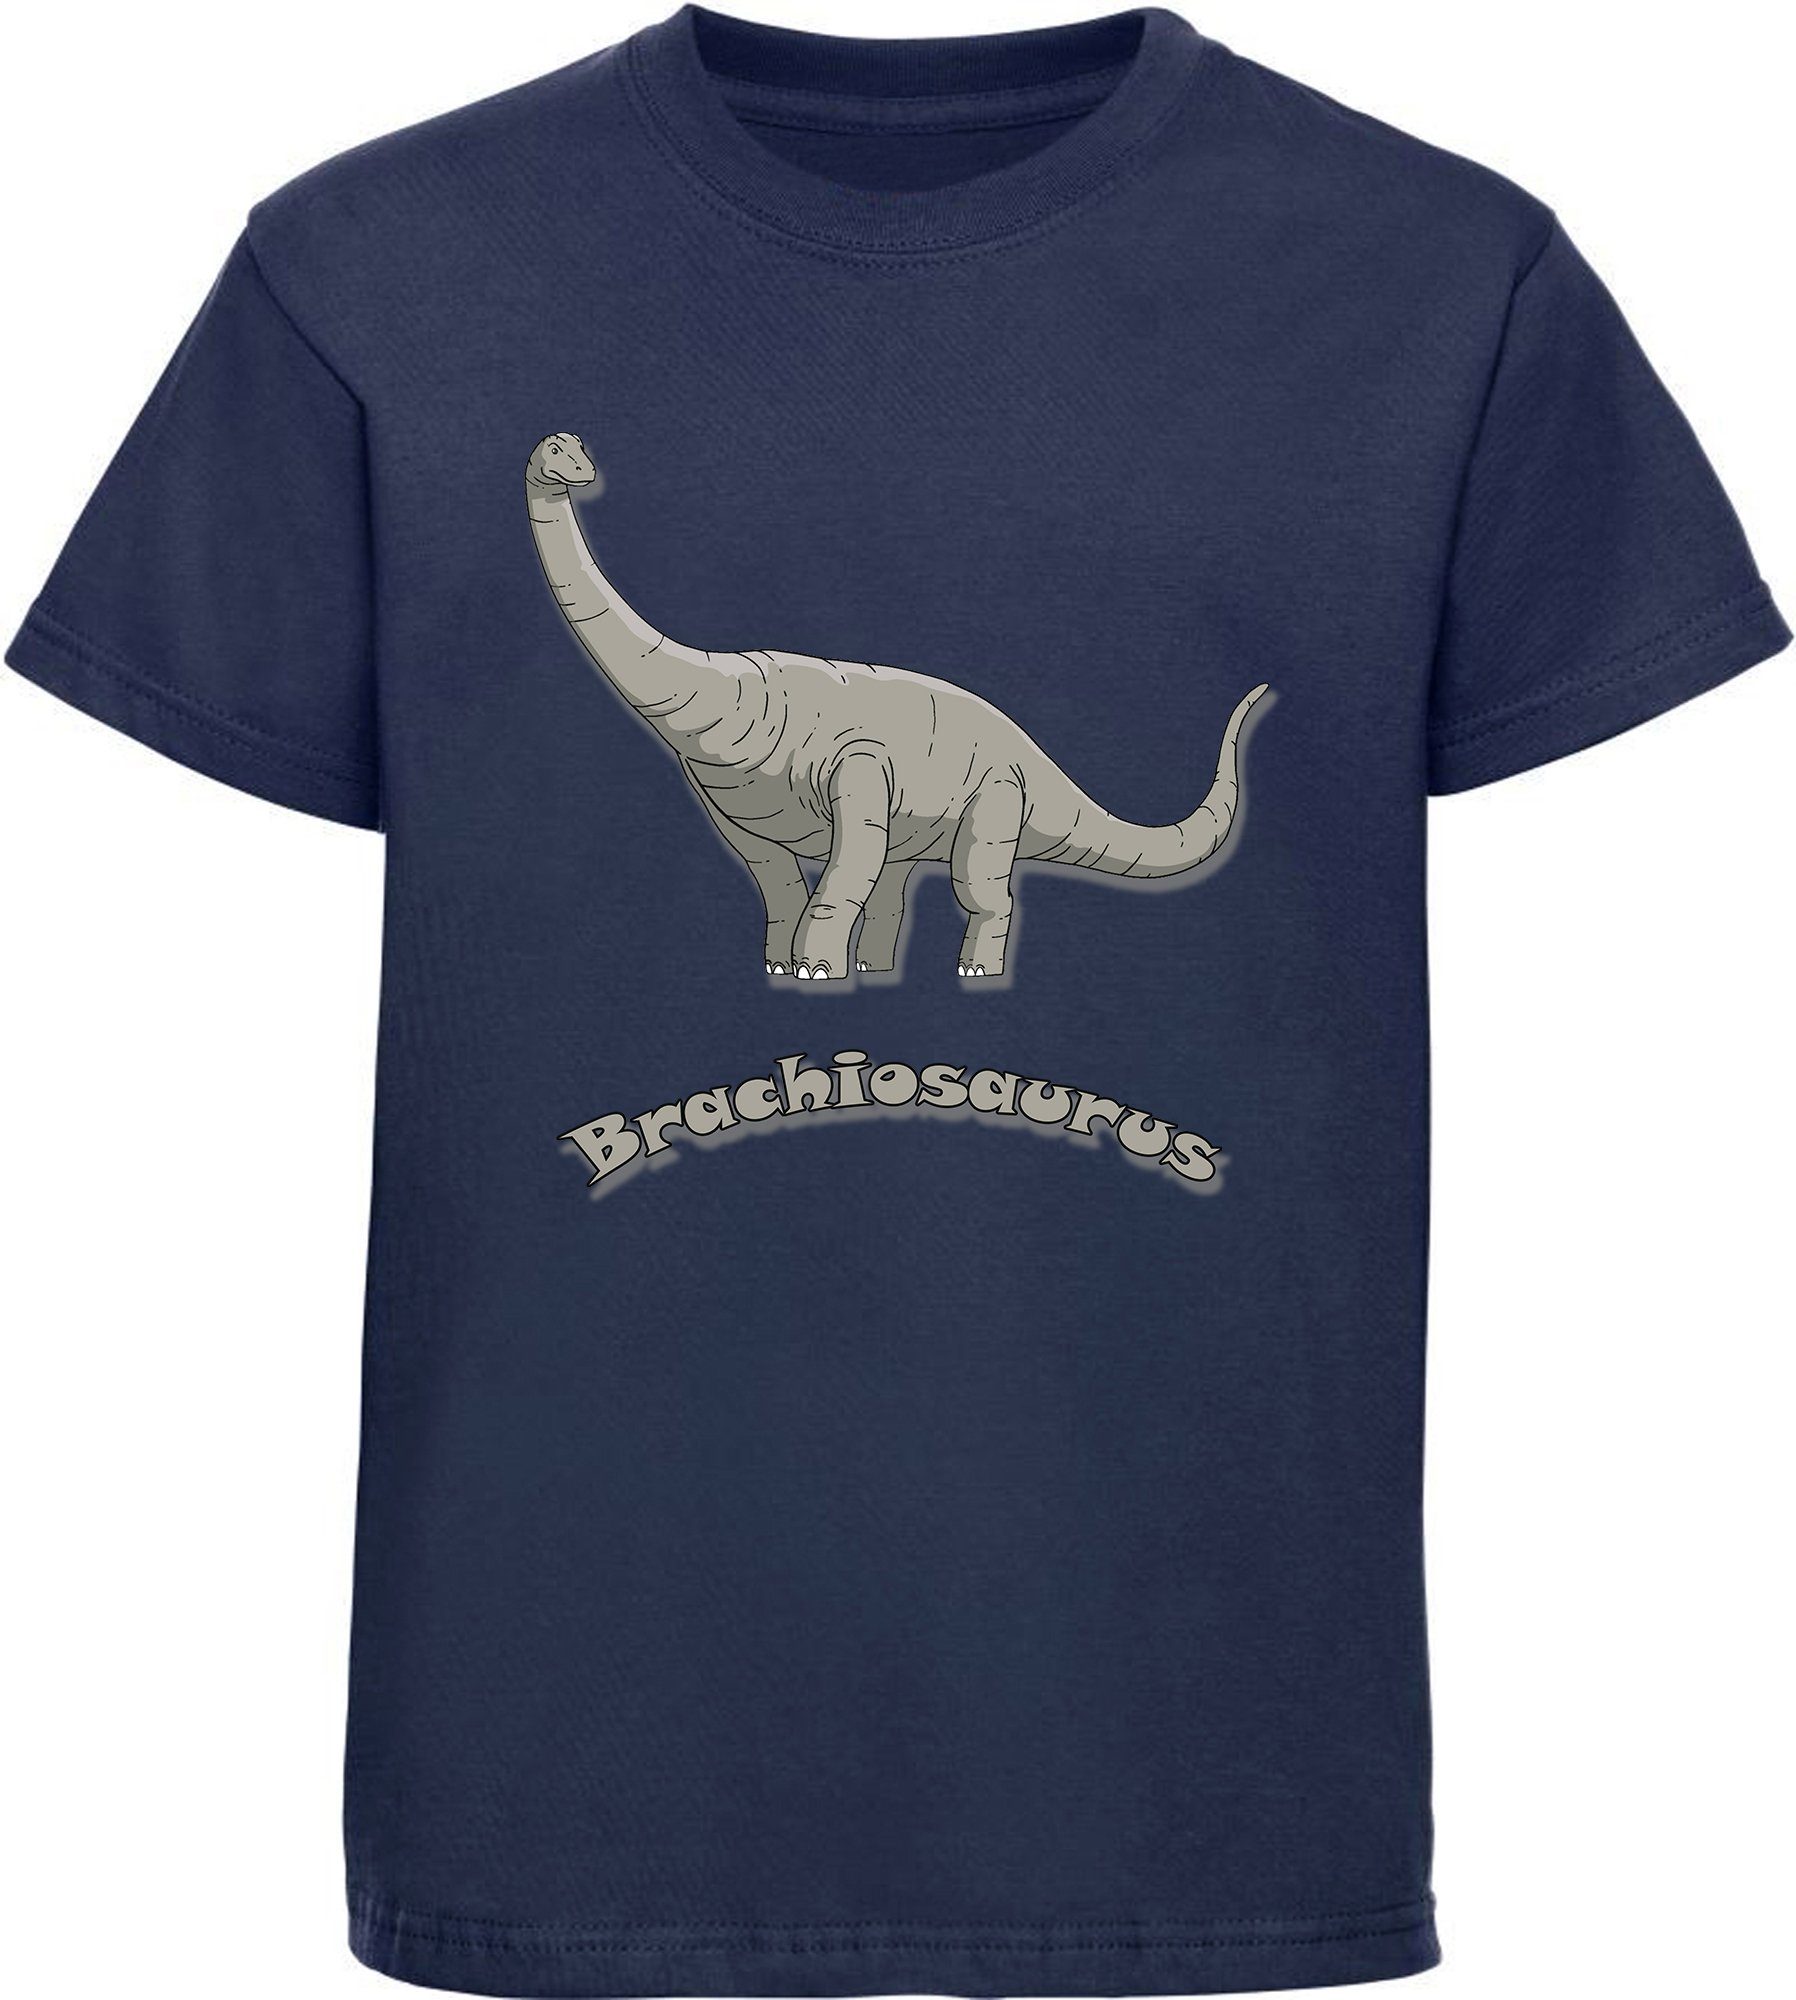 MyDesign24 Print-Shirt bedrucktes Kinder T-Shirt mit Brachiosaurus Baumwollshirt mit Dino, schwarz, weiß, rot, blau, i66 navy blau